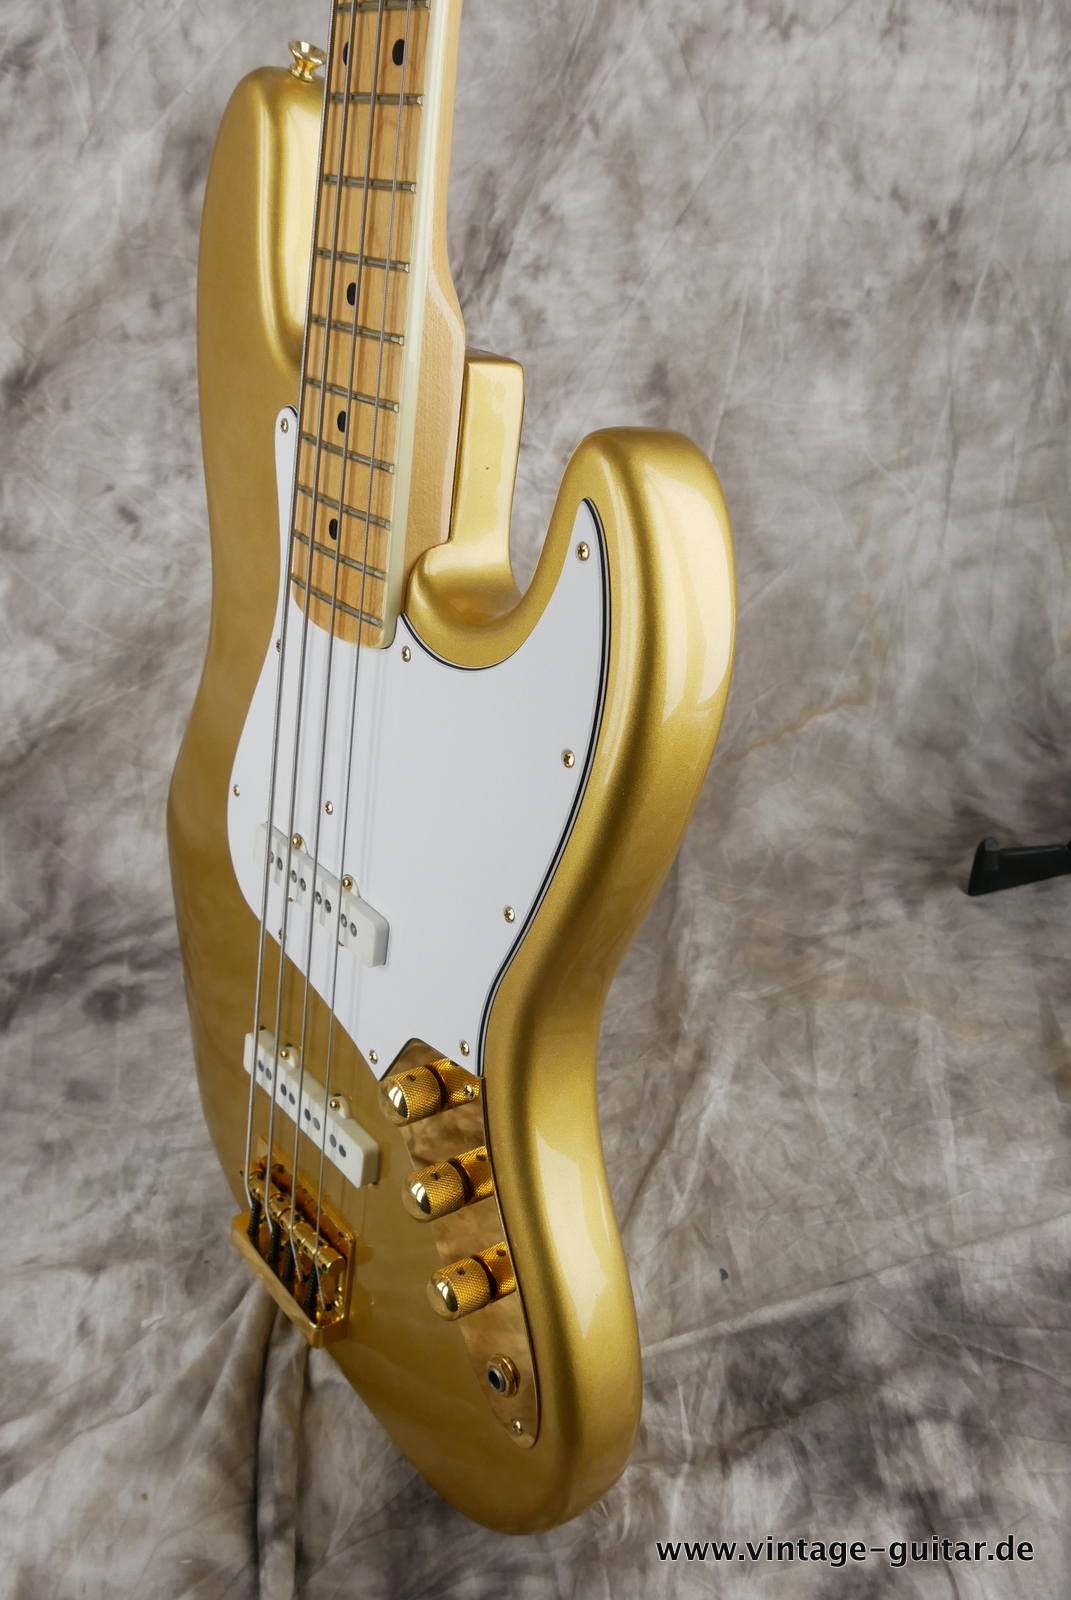 Fender_Jazz_Bass_collectors_series_USA_gold_metallic_1982-006.JPG